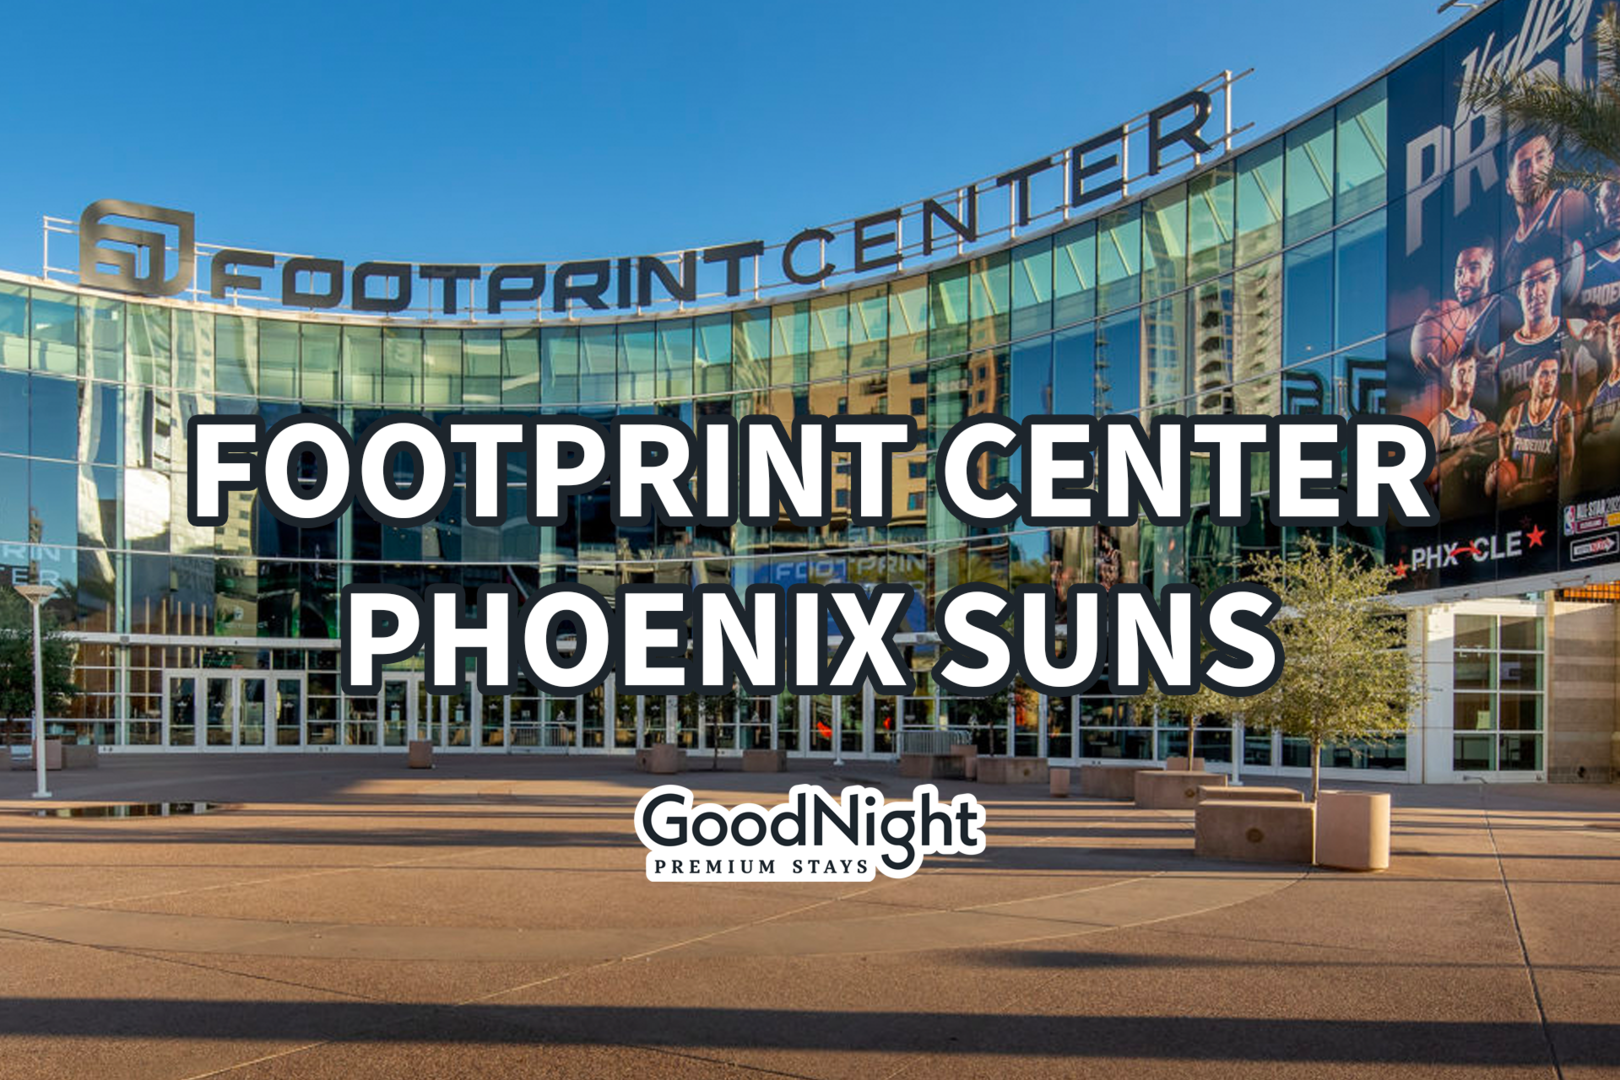 26 mins: Footprint Center - Phoenix Suns